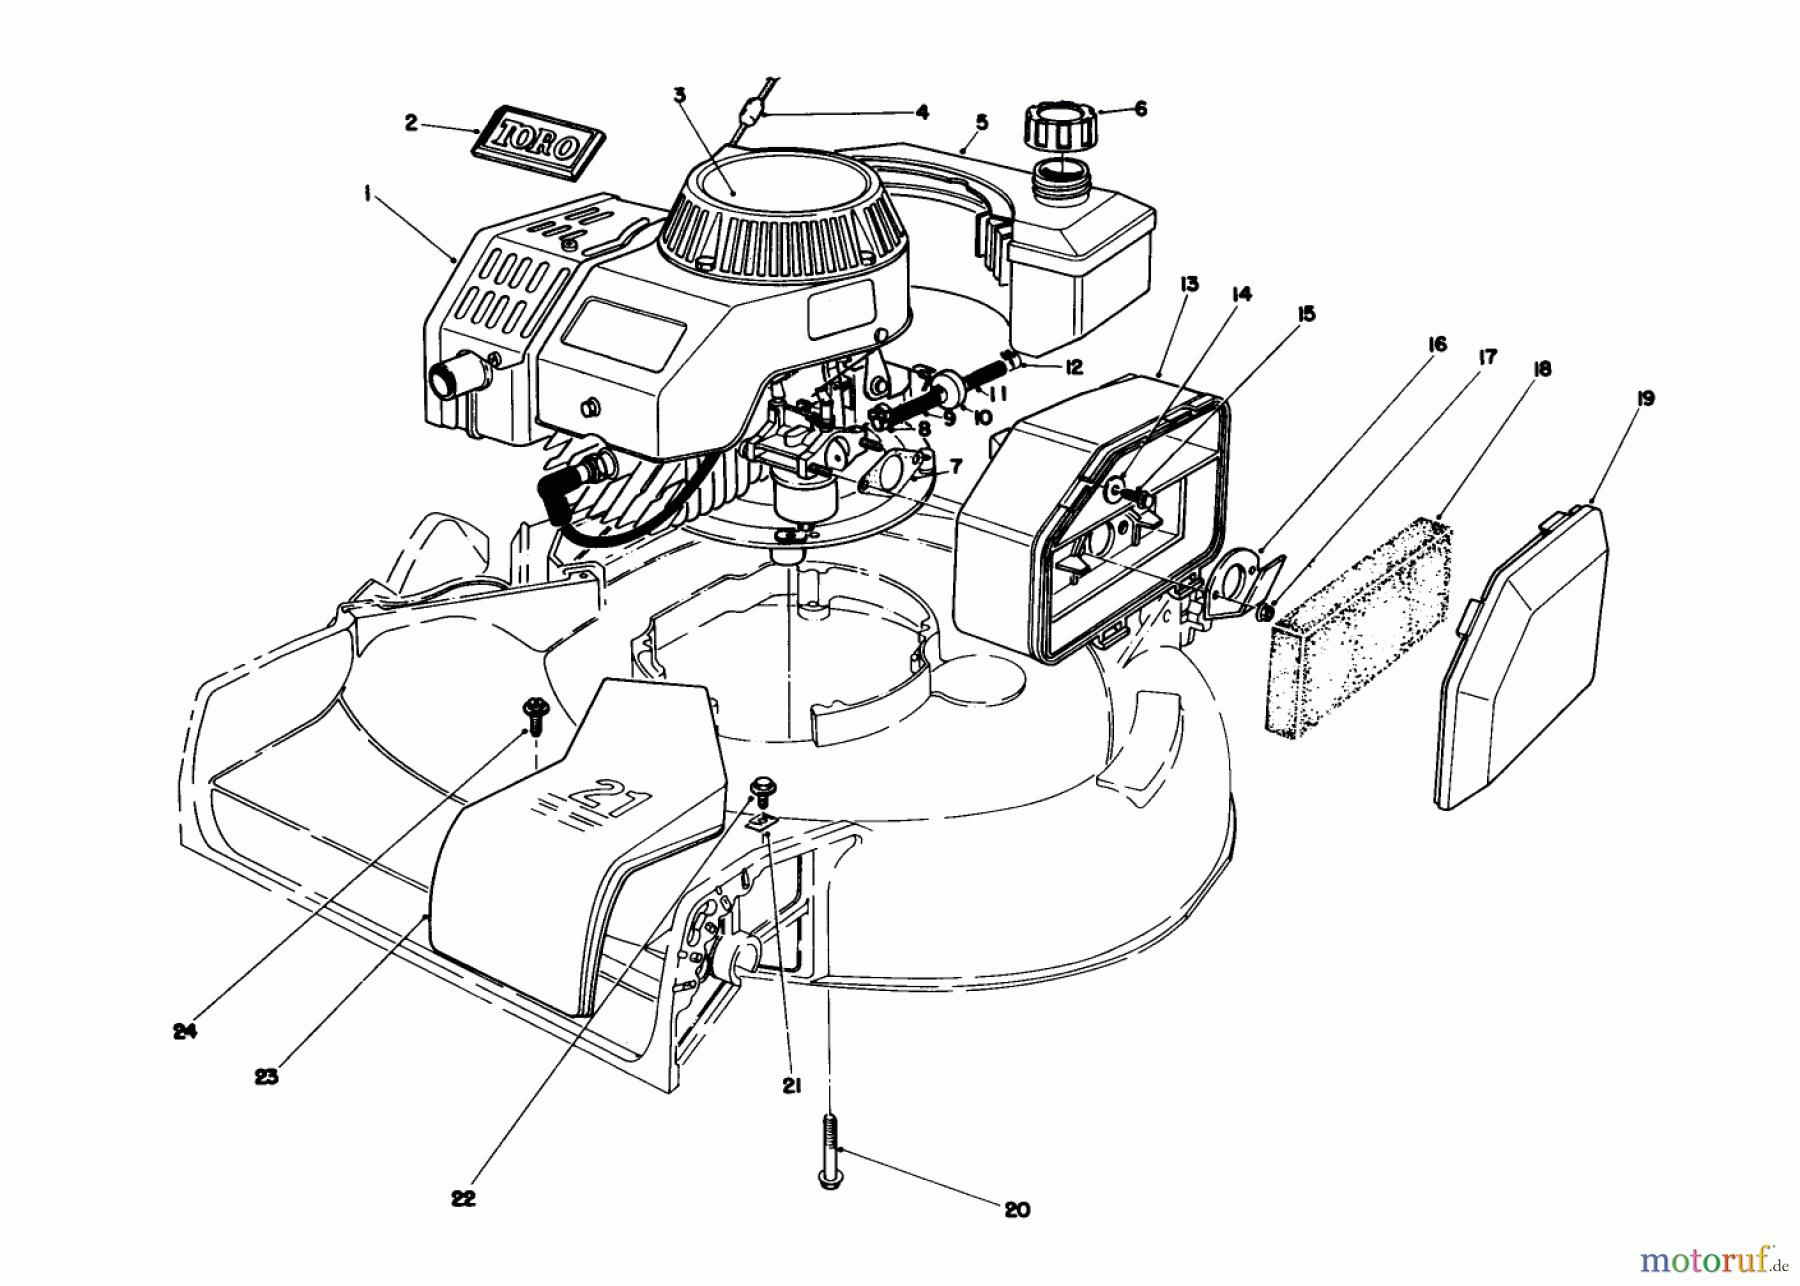  Toro Neu Mowers, Walk-Behind Seite 1 16785 - Toro Lawnmower, 1988 (8000001-8007011) ENGINE ASSEMBLY (SERIAL NO. 8000001-8001571)